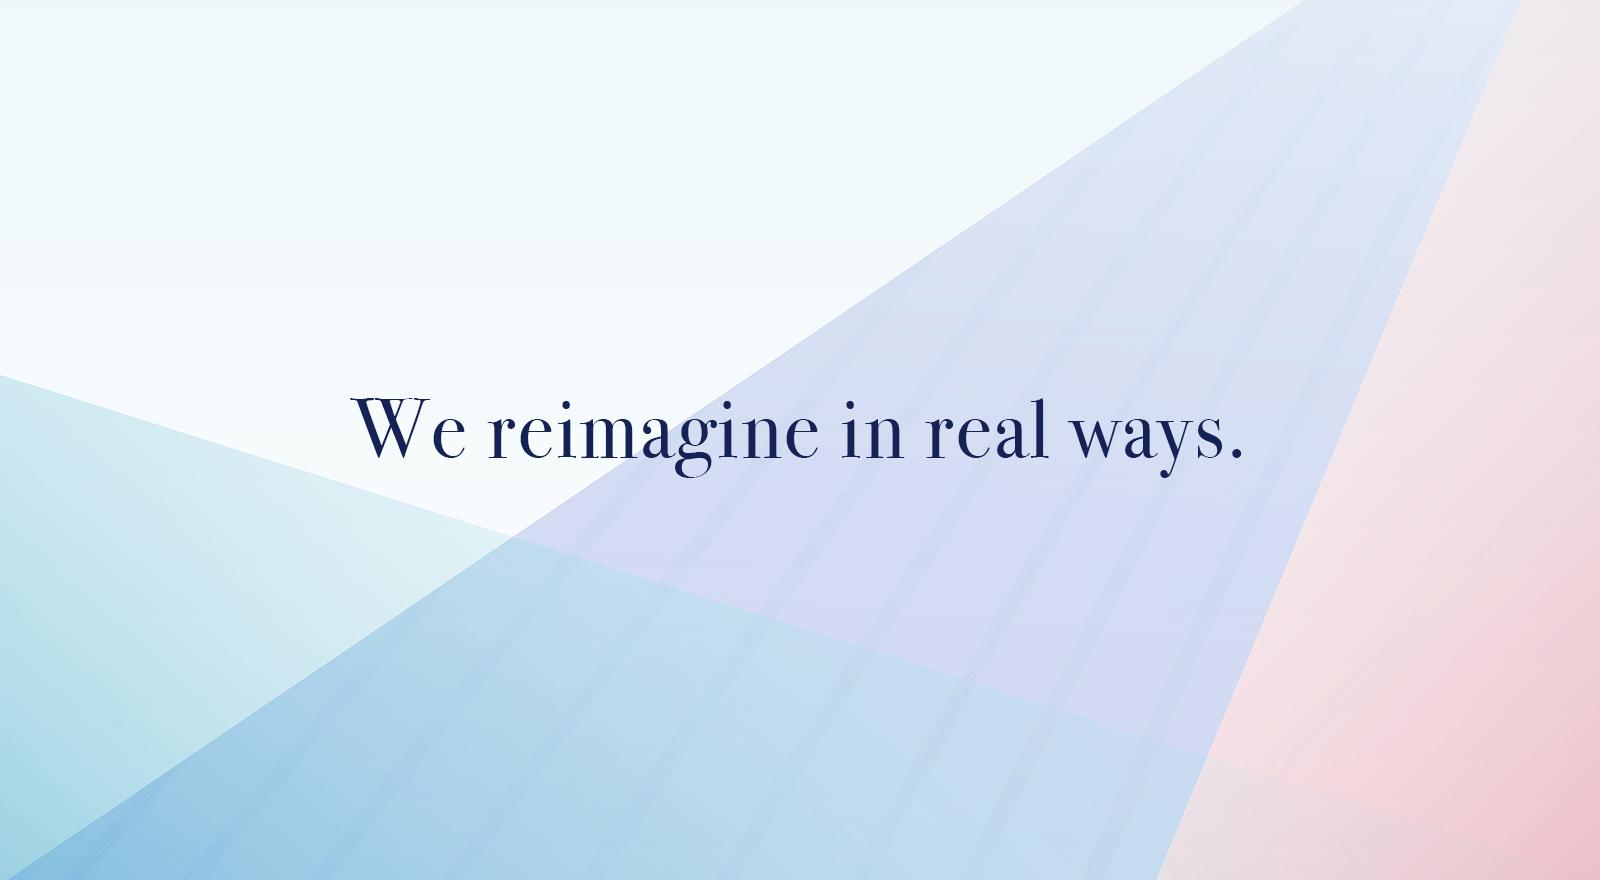 We reimagine in real ways